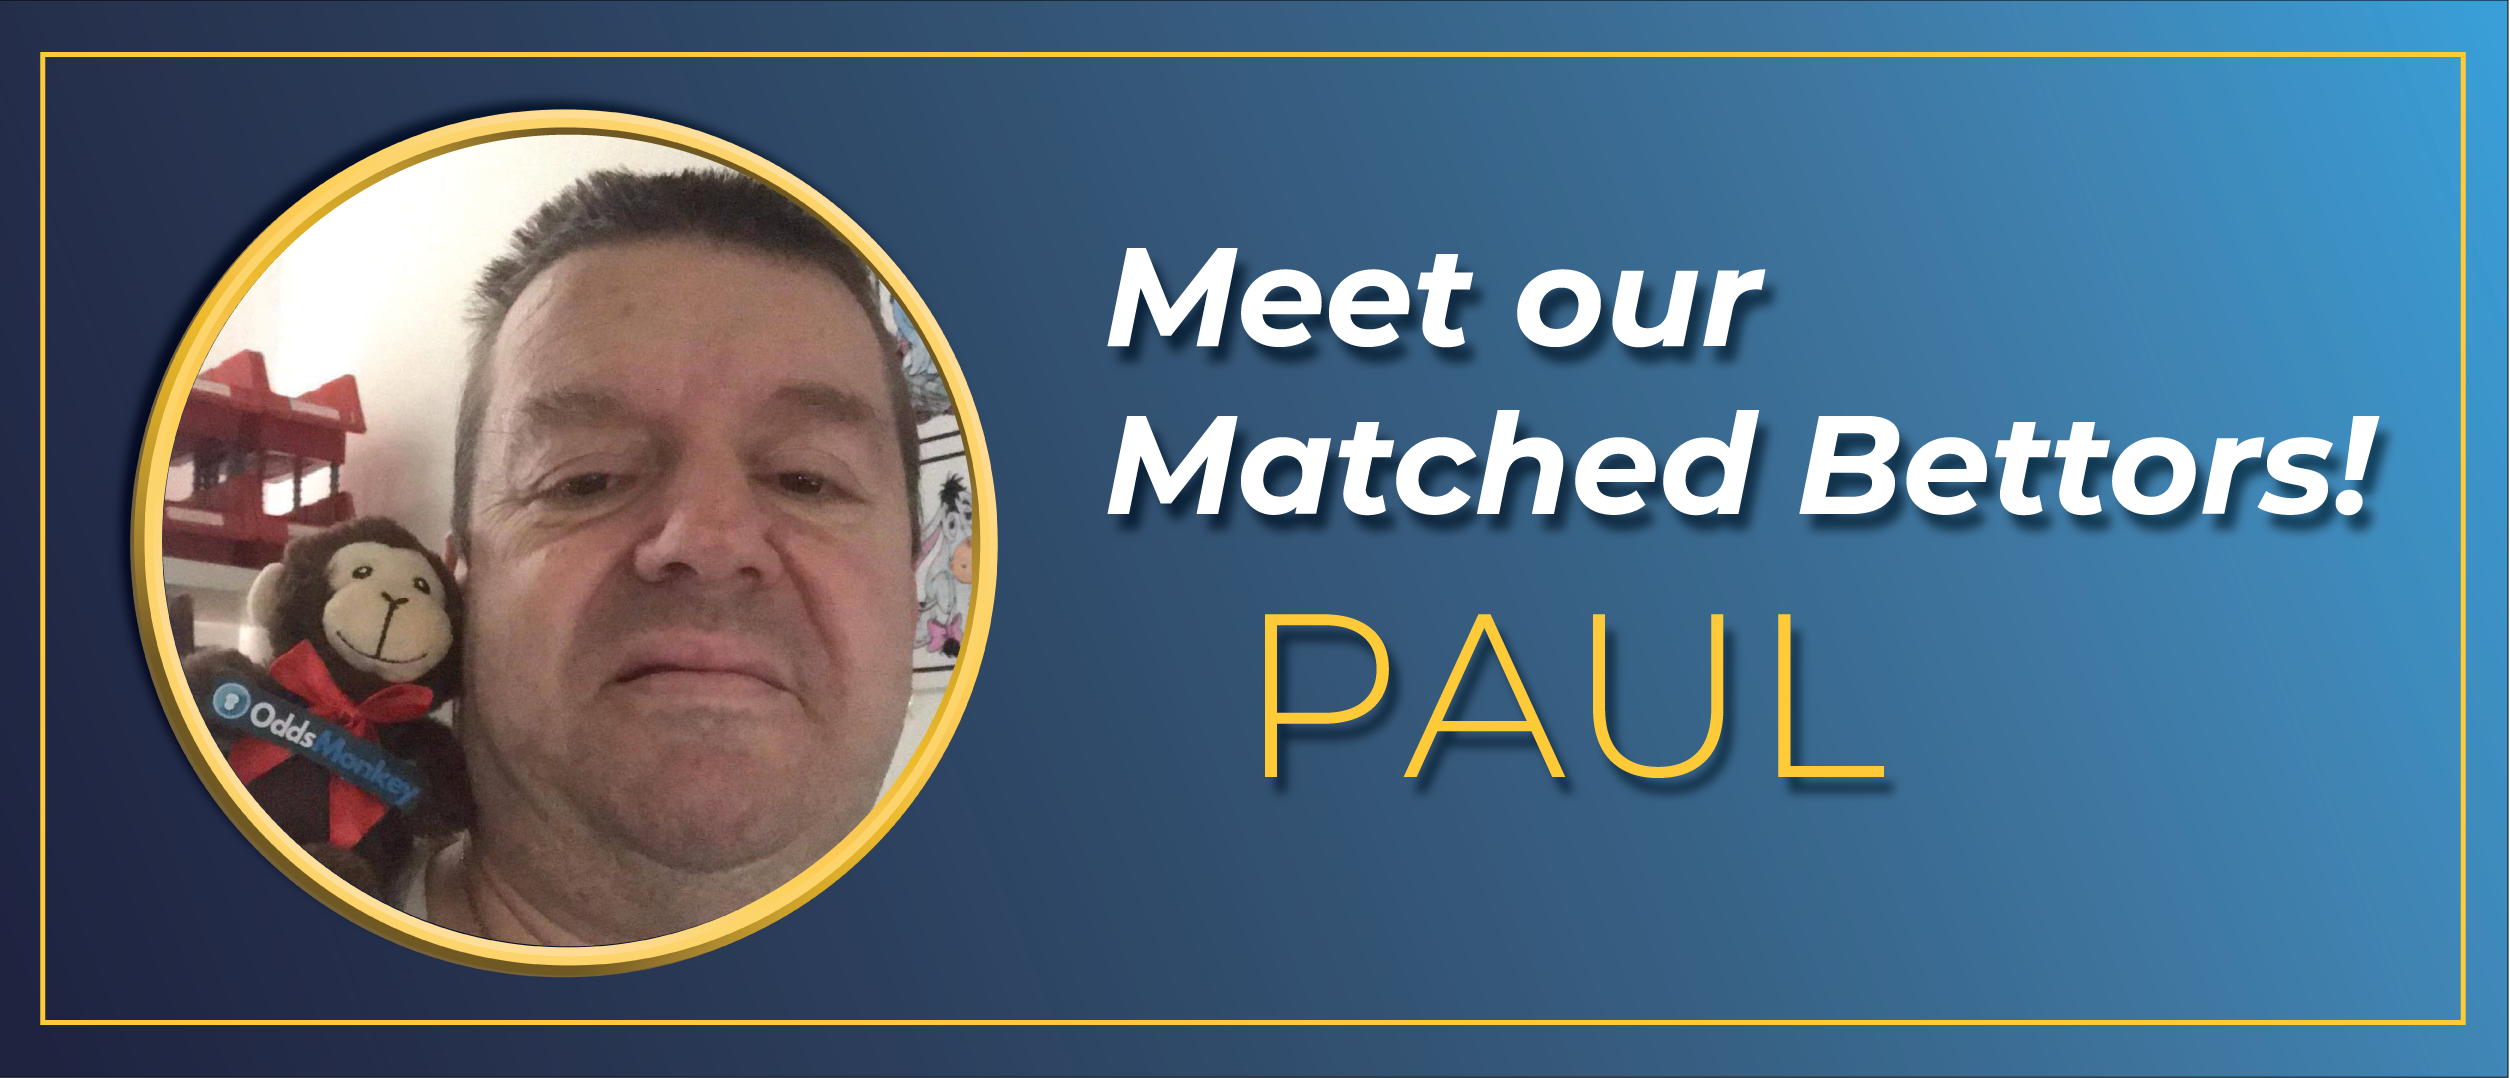 meet our members Paul